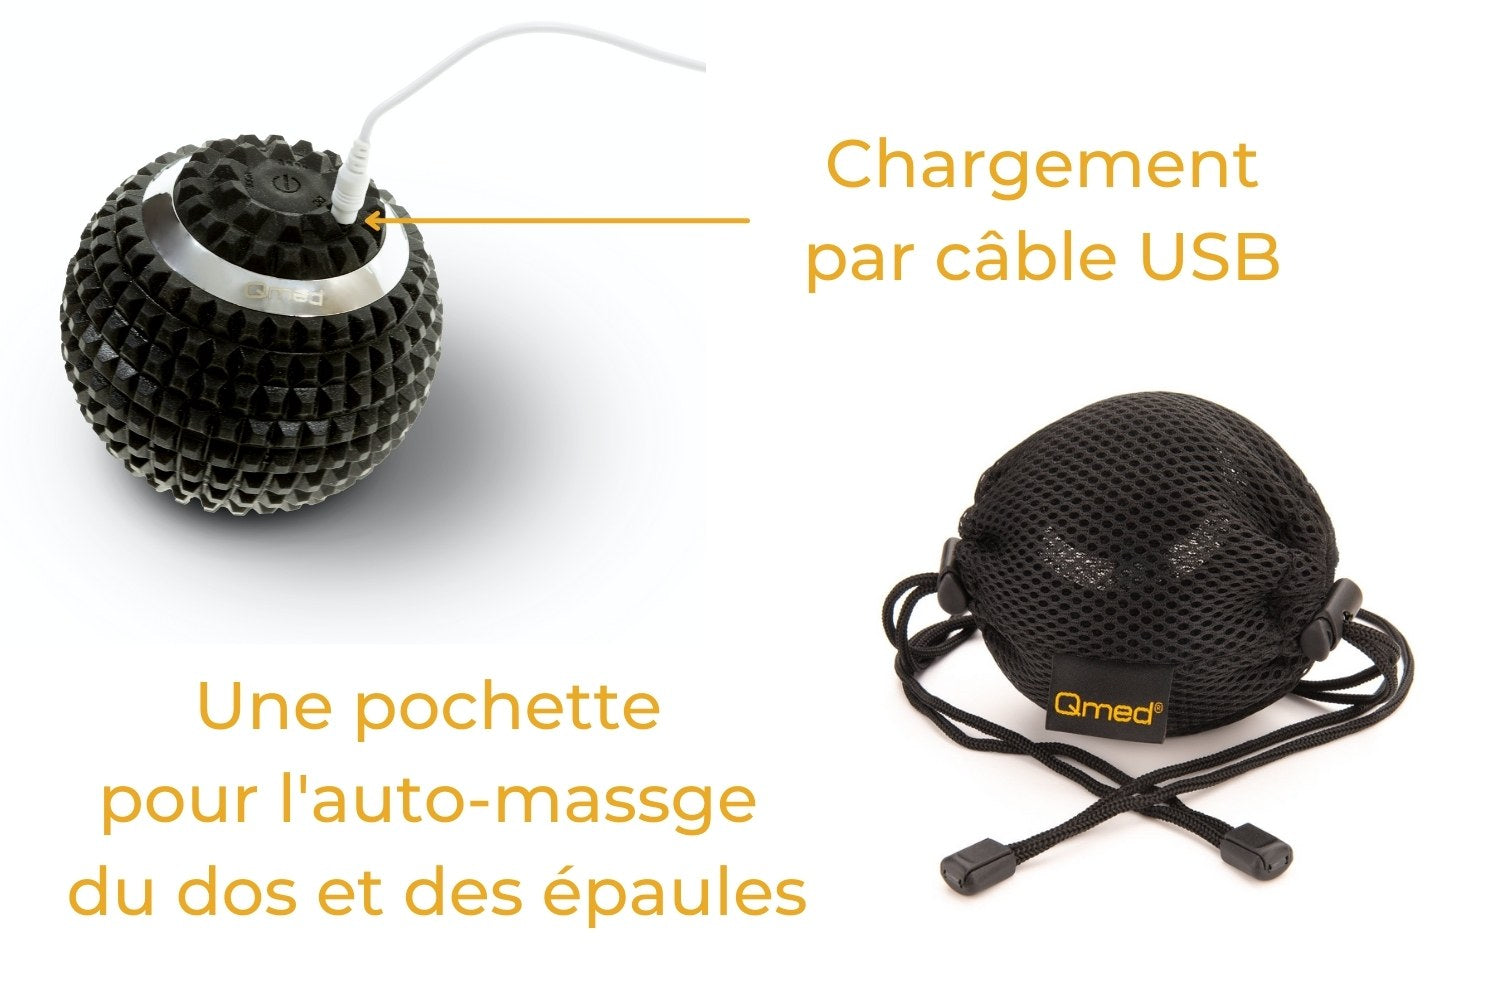 Une pochette pour auto-massage et le câble USB accompagnent notre Balle Vibrante